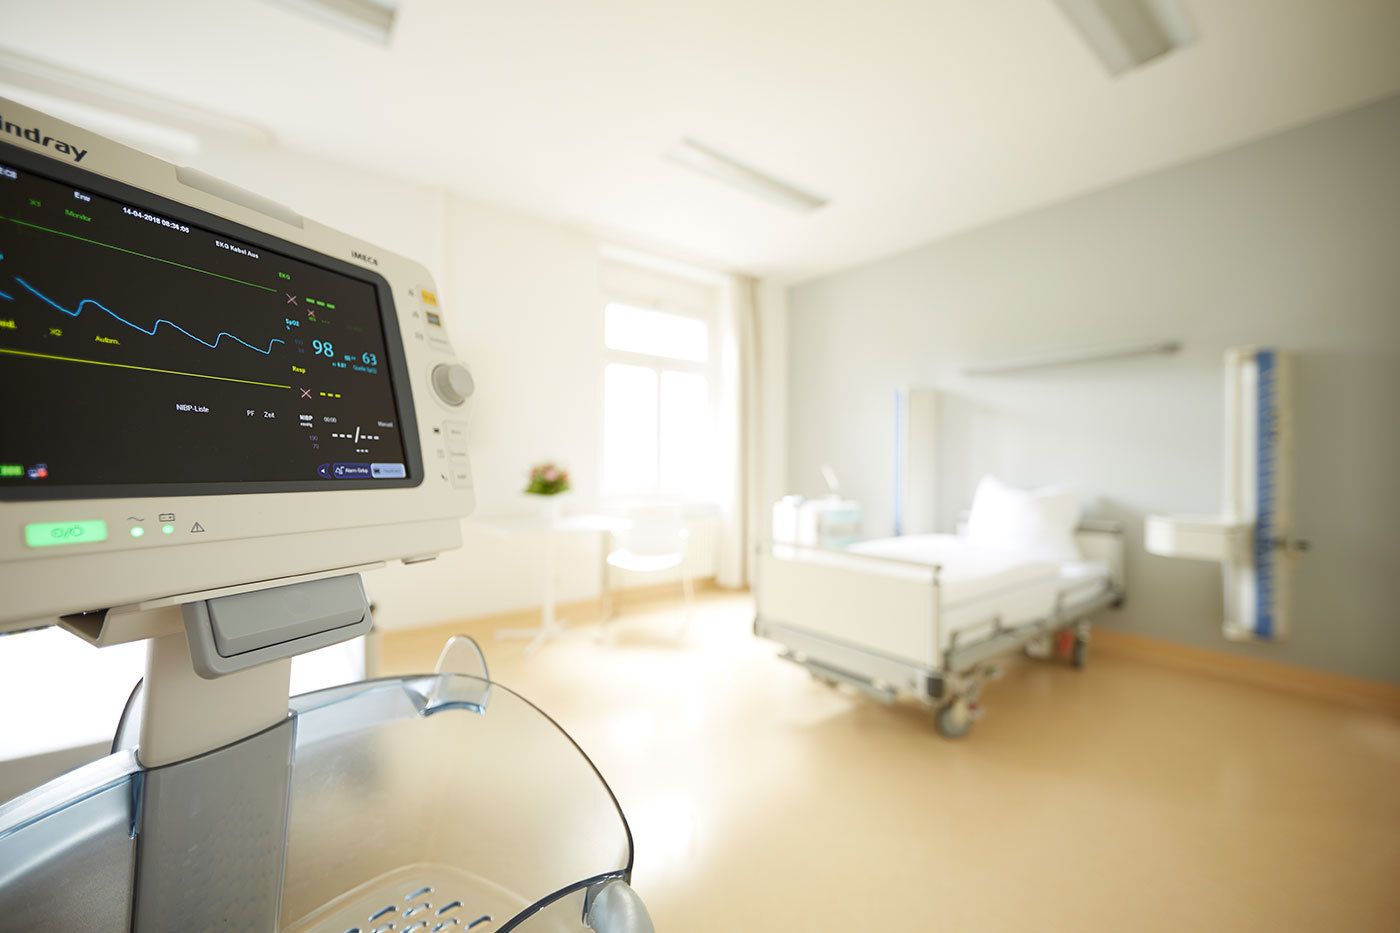 Das Patientzimmer ist hell und modern eingerichtet mit einem Krankenbett und technischen Geräten, die u.a. Vitalwerte anzeigen. Ein Tisch mit Stühlen lädt Gäste zum verweilen ein.